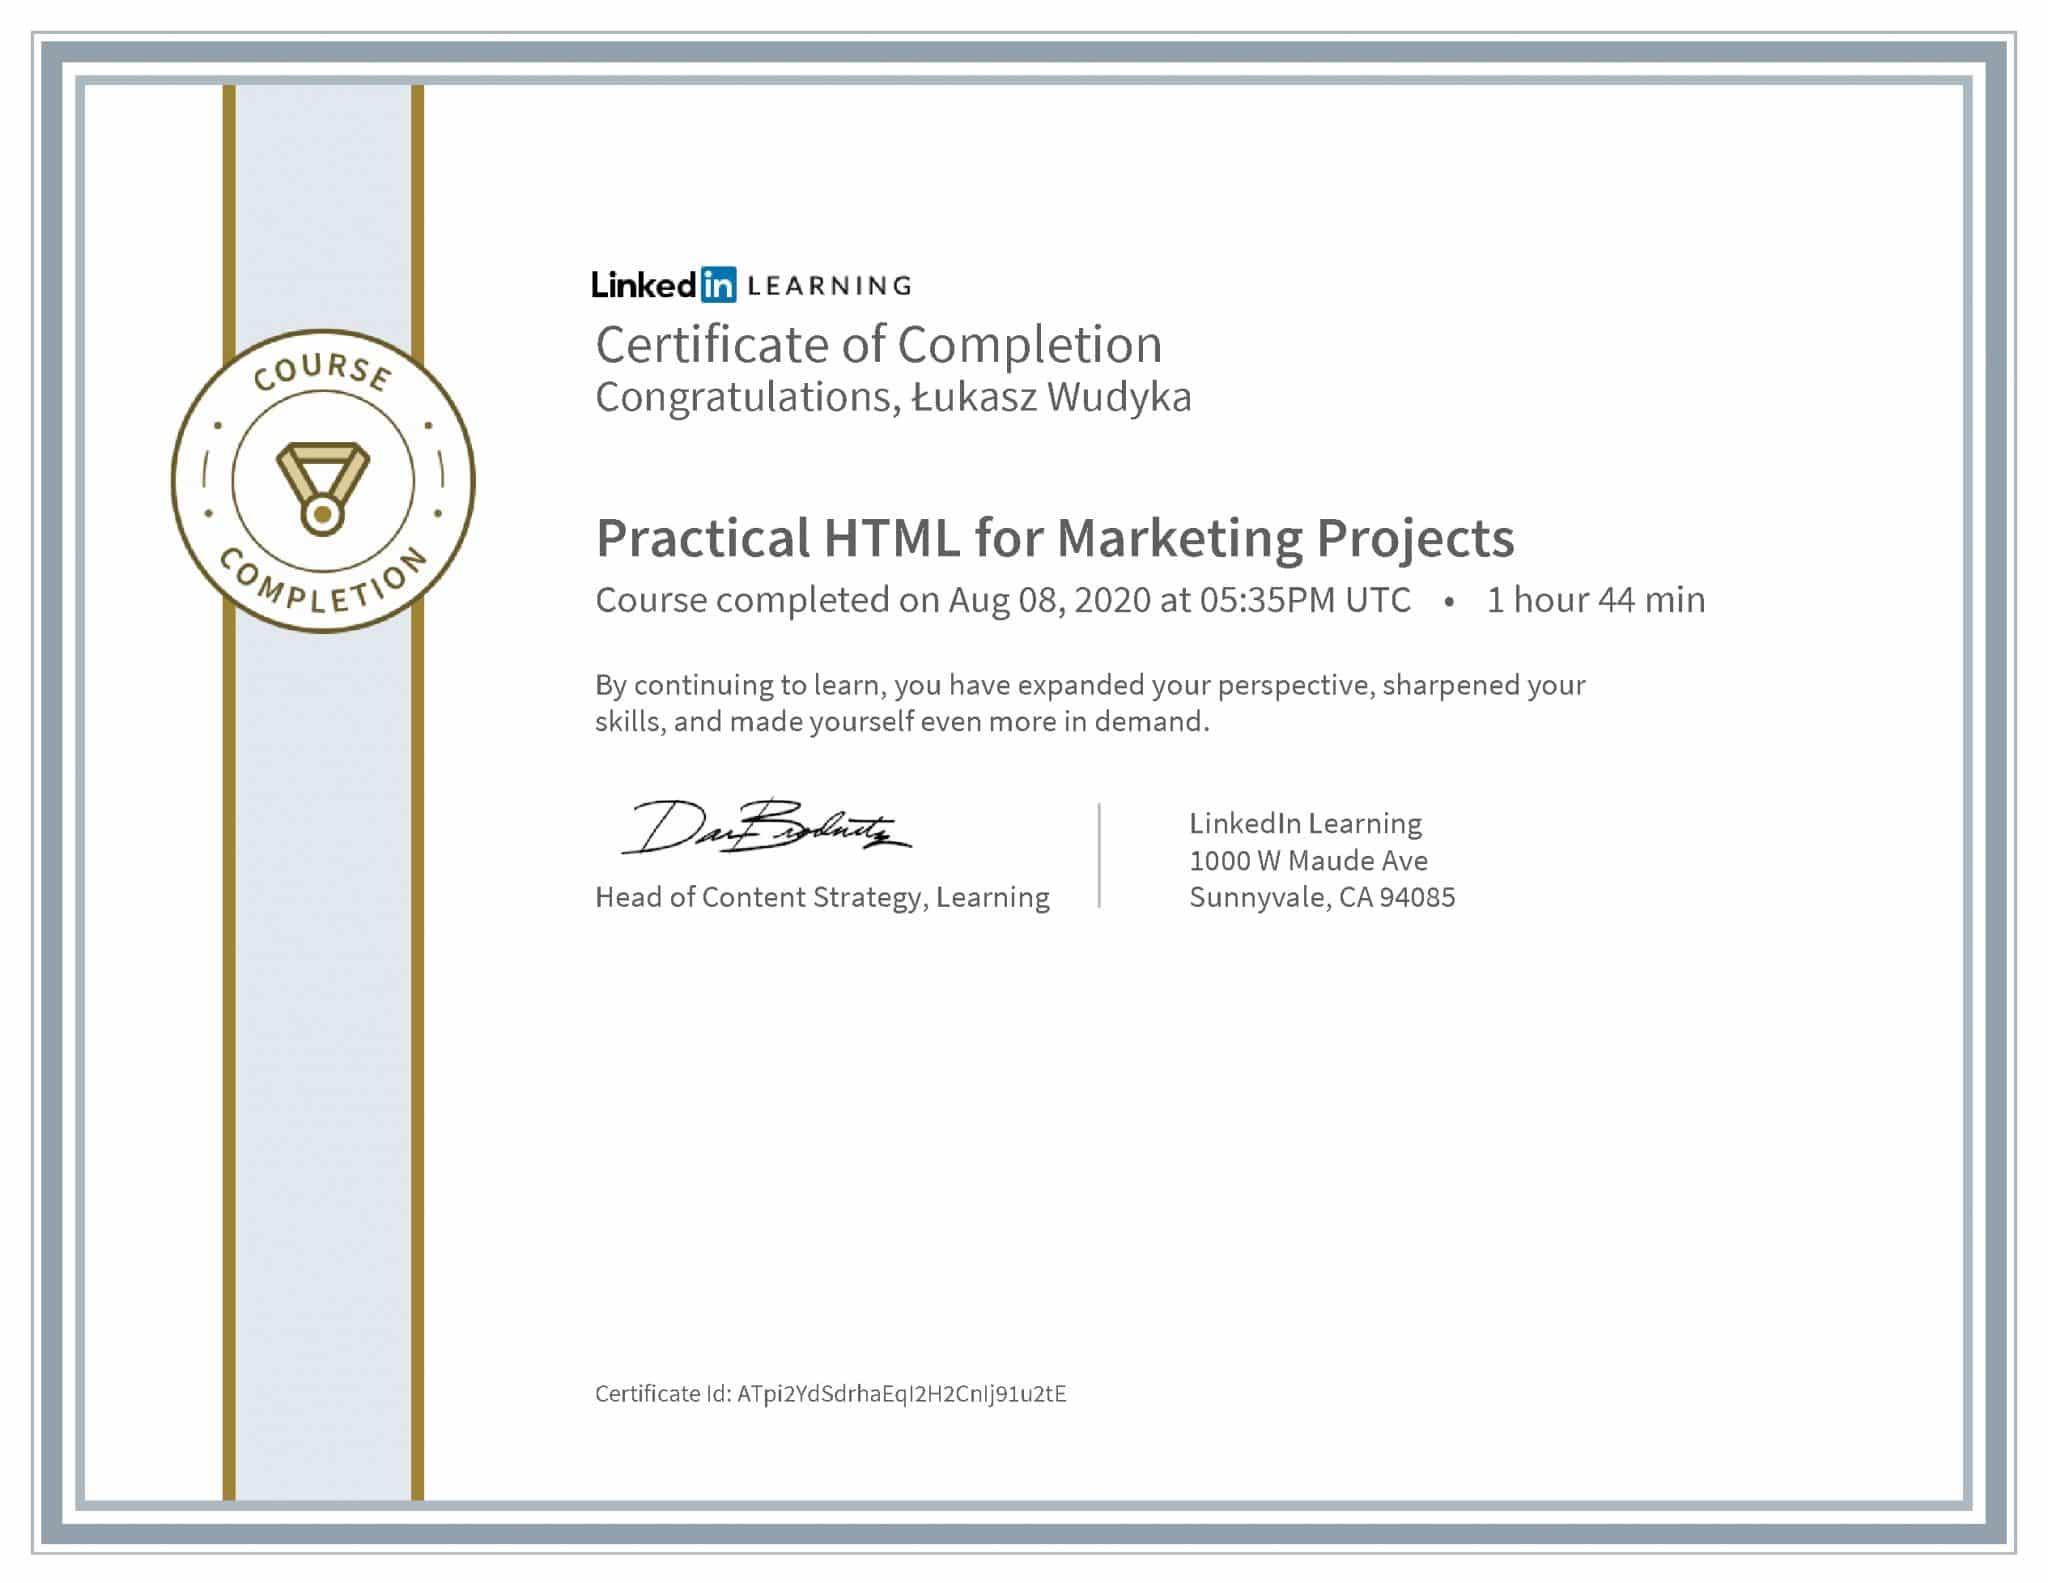 Łukasz Wudyka certyfikat LinkedIn Practical HTML for Marketing Projects